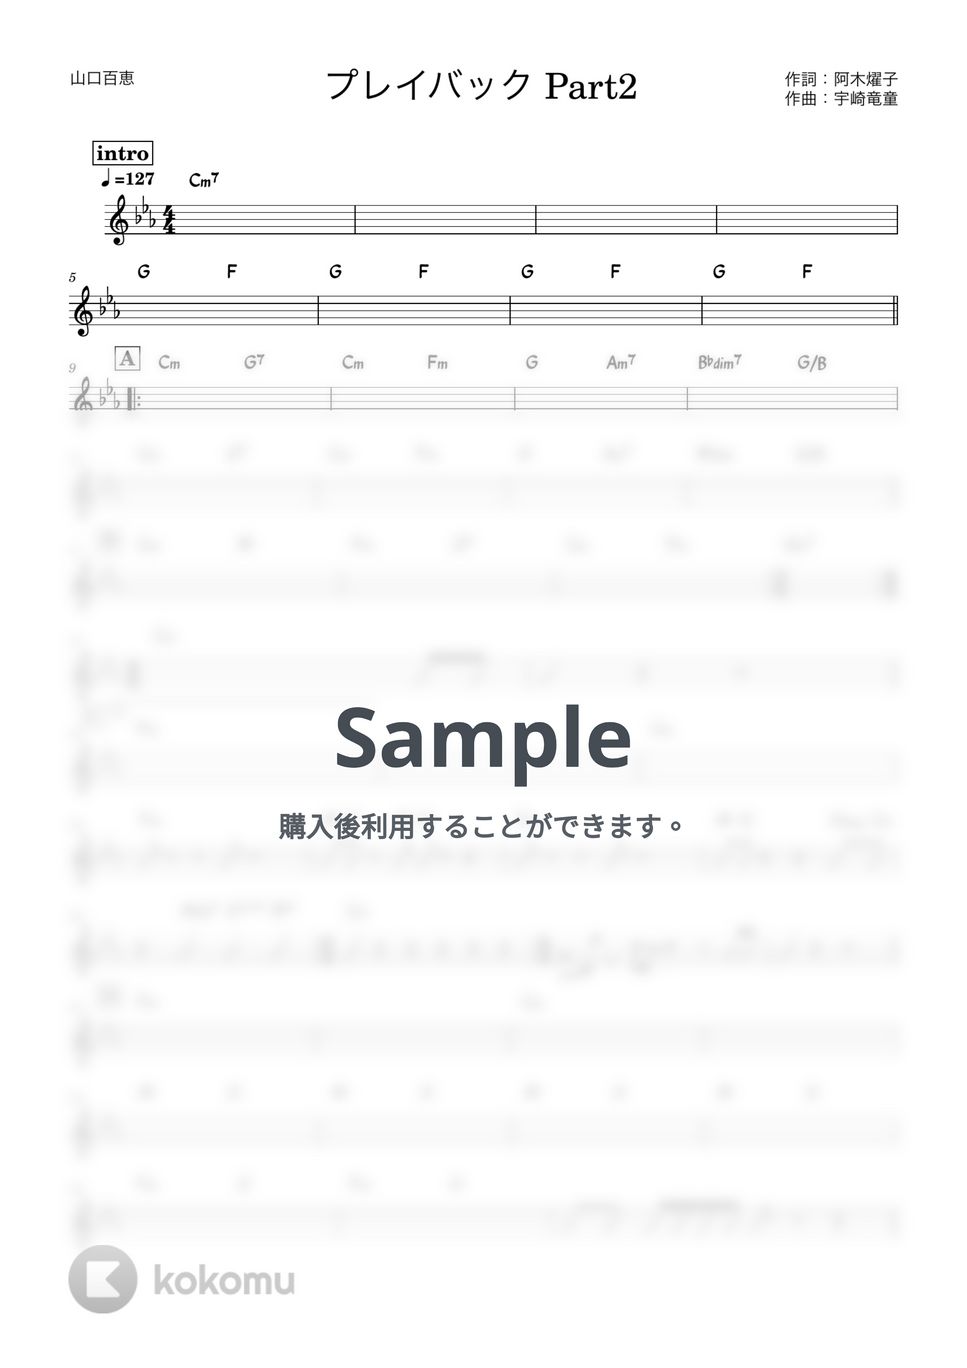 山口百恵 - プレイバックPart2 (バンド用コード譜) by 箱譜屋